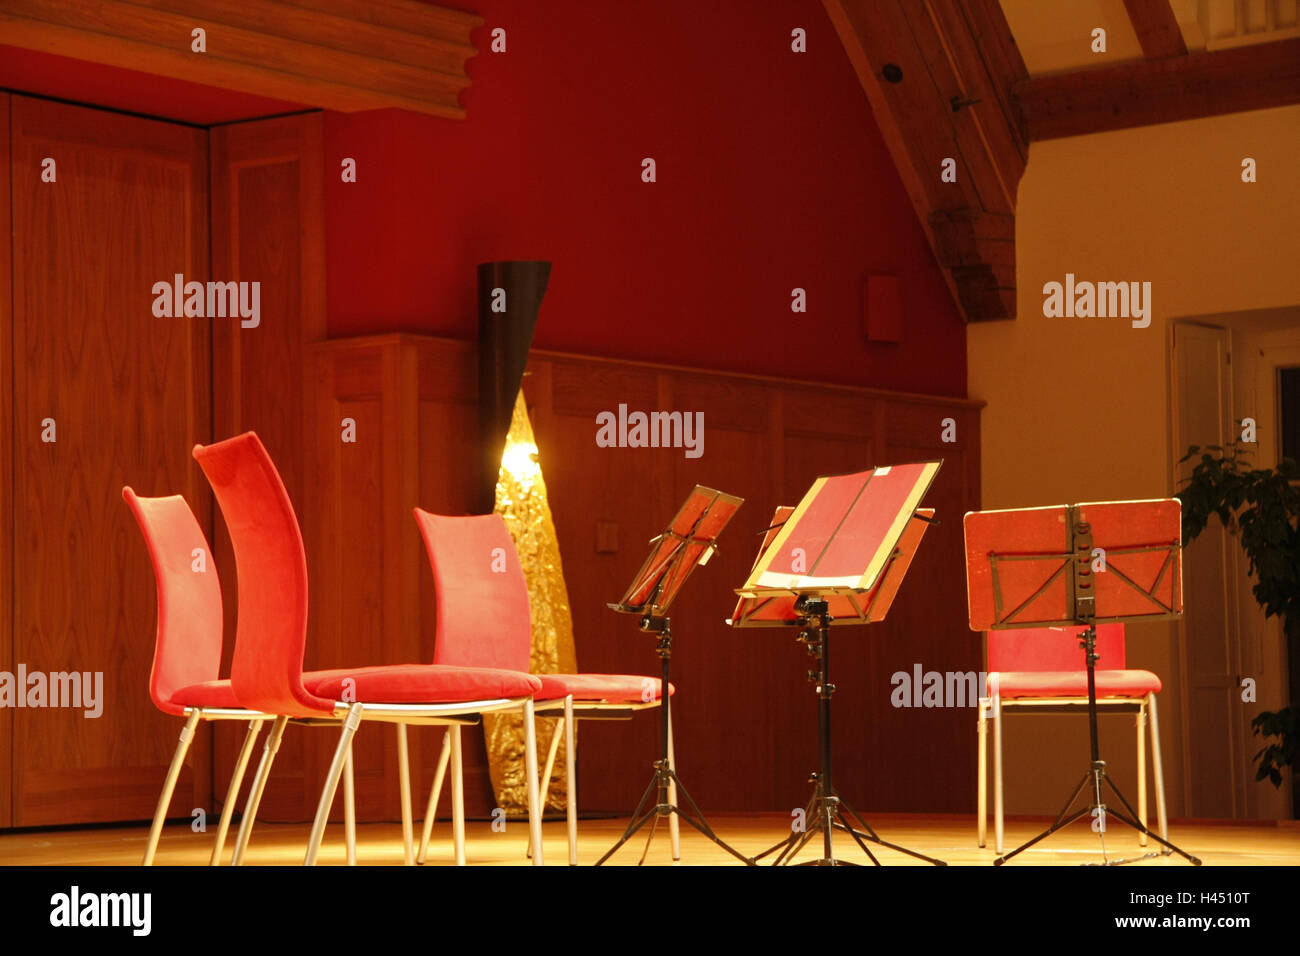 Salle de Concert, chaises, pupitres à musique, vide, déserte, la culture, la musique, événement, événement musical, quartet, stand, notes, détenteurs de score, rouge, de la lumière, lampe, l'atmosphère, l'atmosphère, à l'intérieur, Banque D'Images